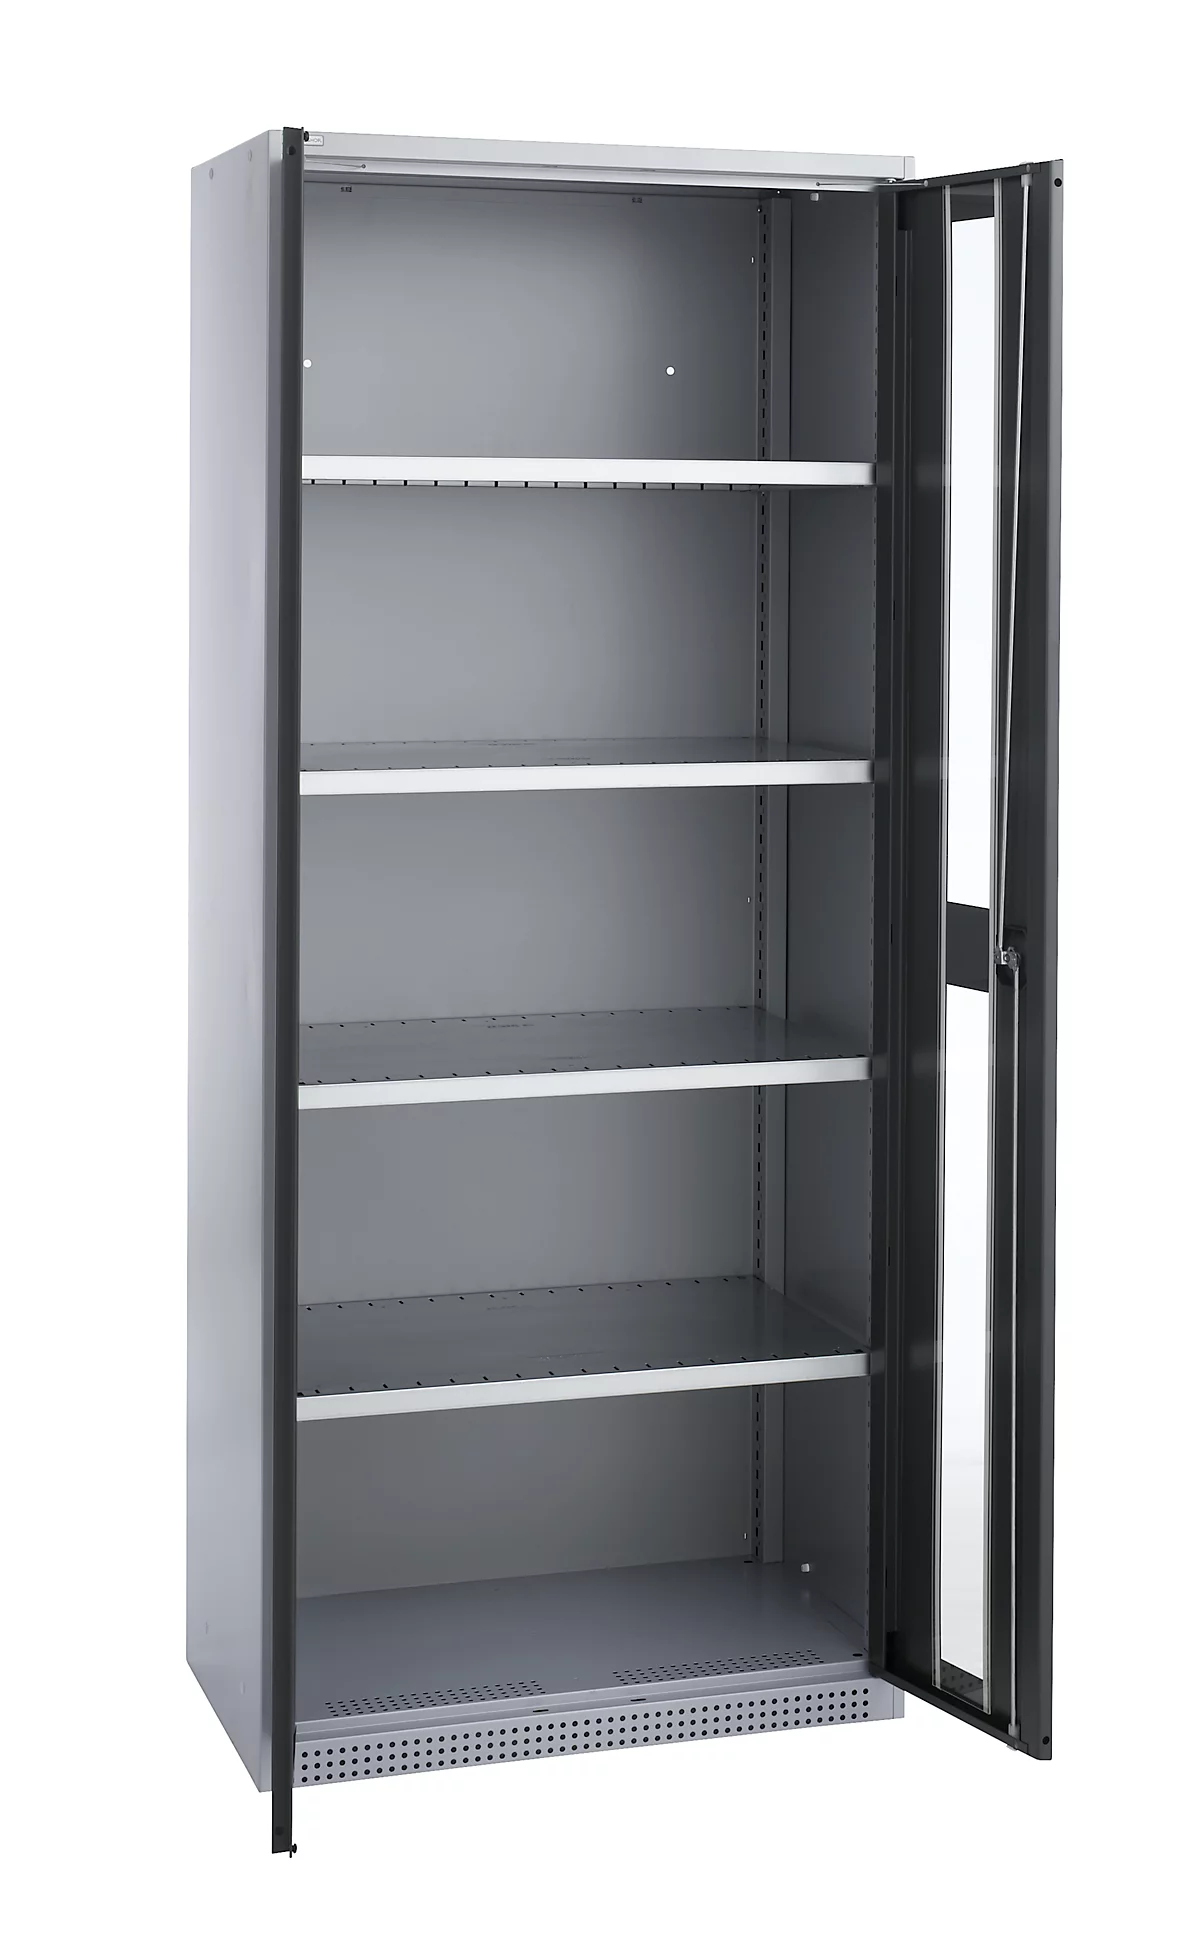 Schäfer Shop Genius armario con puerta giratoria FS, acero, mirilla, agujeros de ventilación, An 810 x Pr 520 x Al 1950 mm, 5 OH, aluminio blanco/gris antracita, hasta 300 kg 